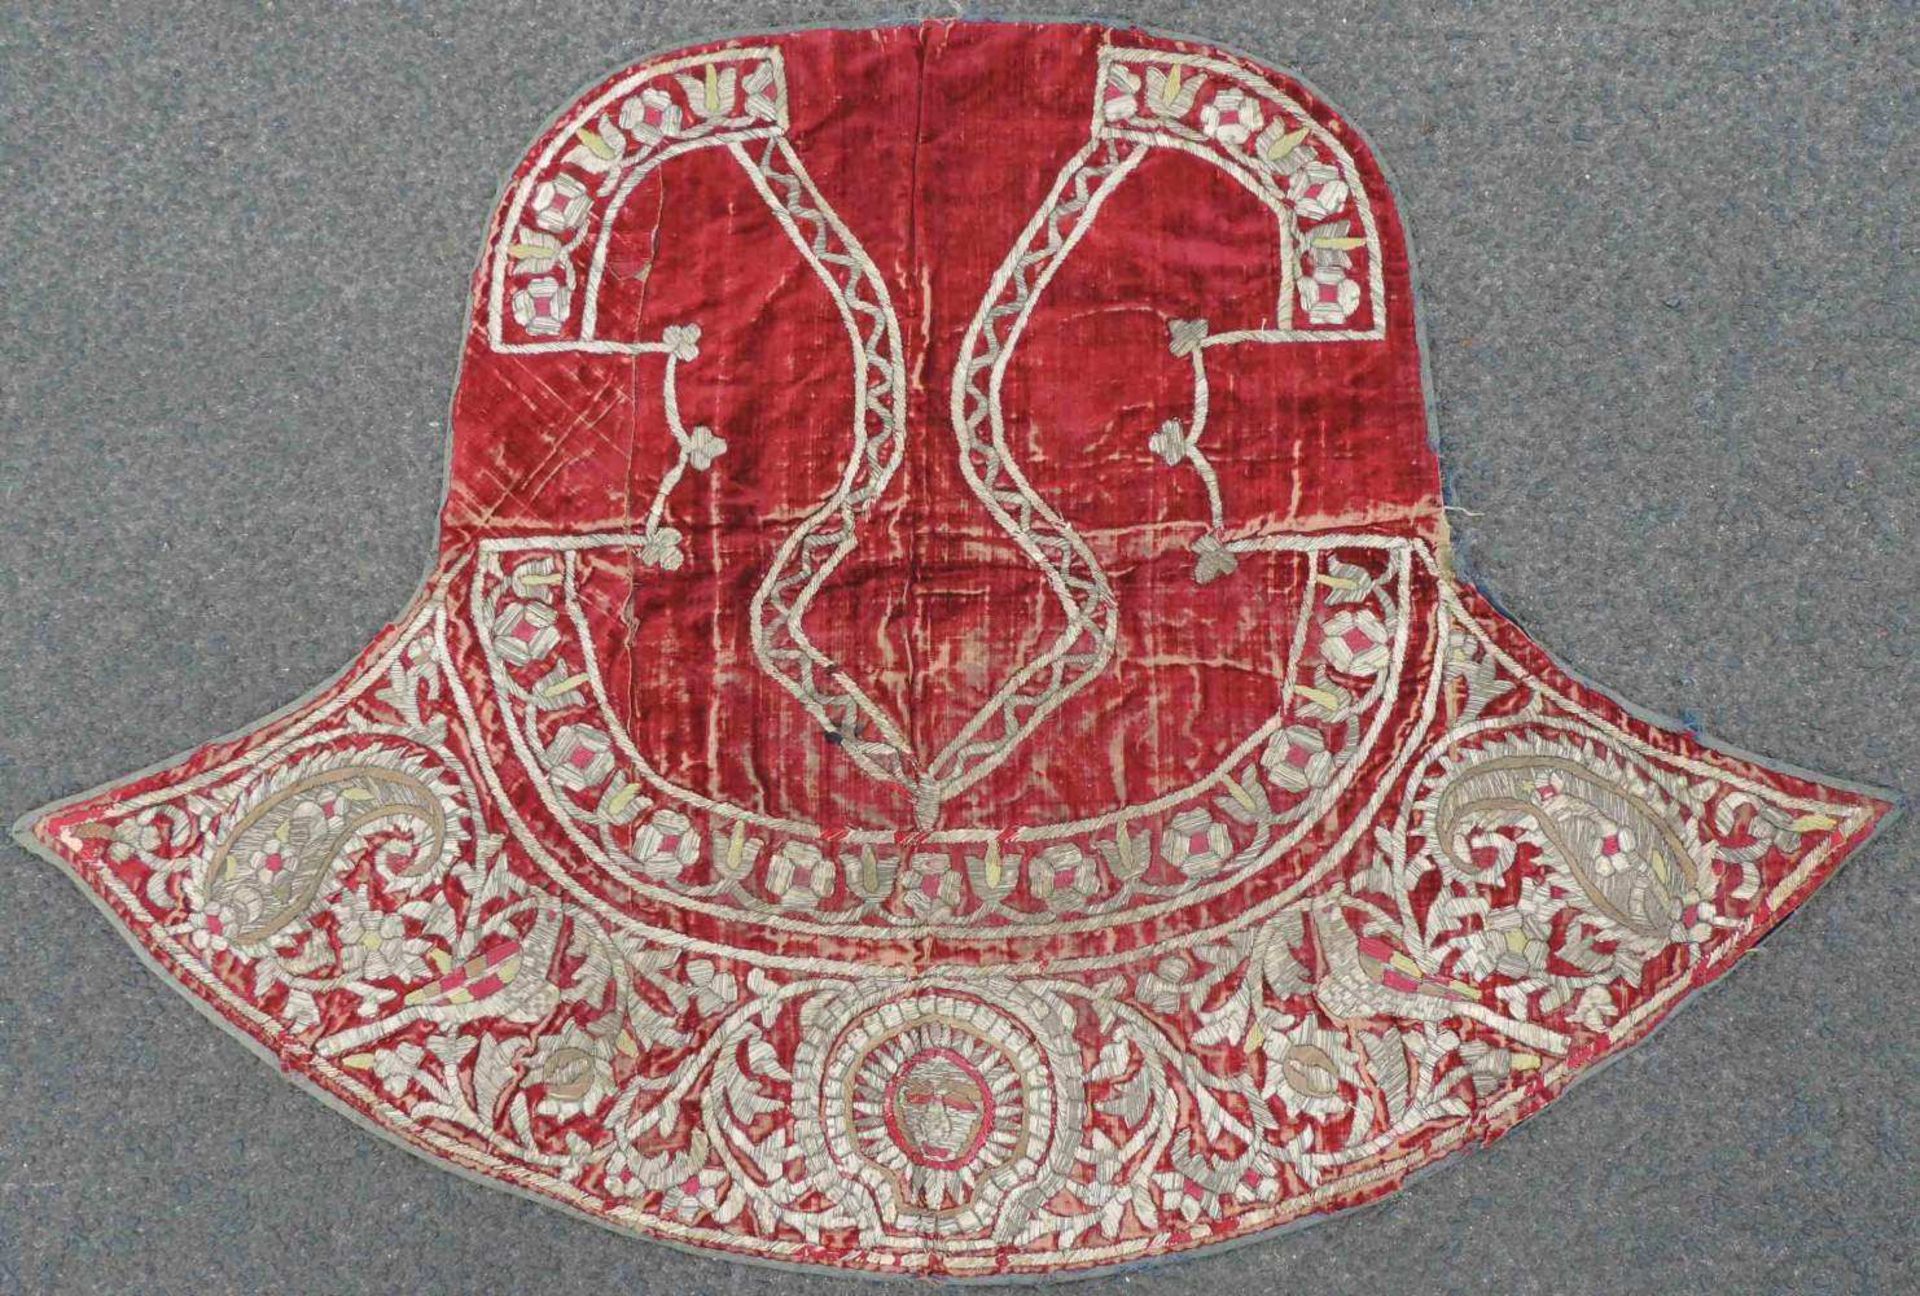 Satteldecke. Osmanisches Reich / Kaukasus. Antik, um 1800. 68 cm x 100 cm. Handarbeit. Gehöhte Gold-